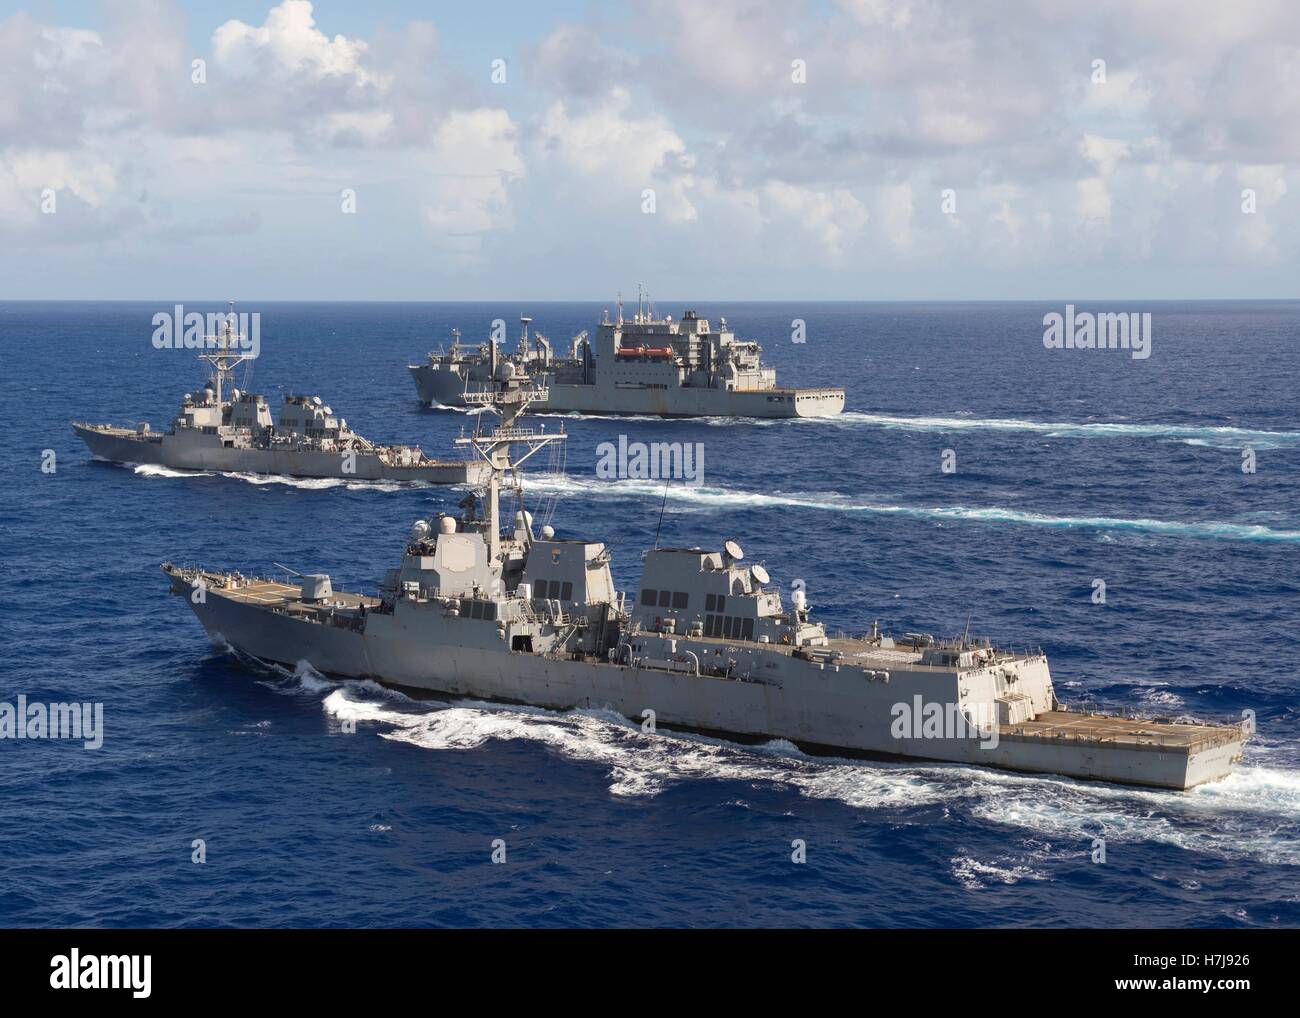 El USN clase Arleigh Burke de destructores de misiles guiados USS Spruance (delantero), USS Decatur y el USN Lewis y Clark clase municiones de carga seca buque USNS Carl Brashear vapor en formación, 27 de octubre de 2016 en el Océano Pacífico. Foto de stock